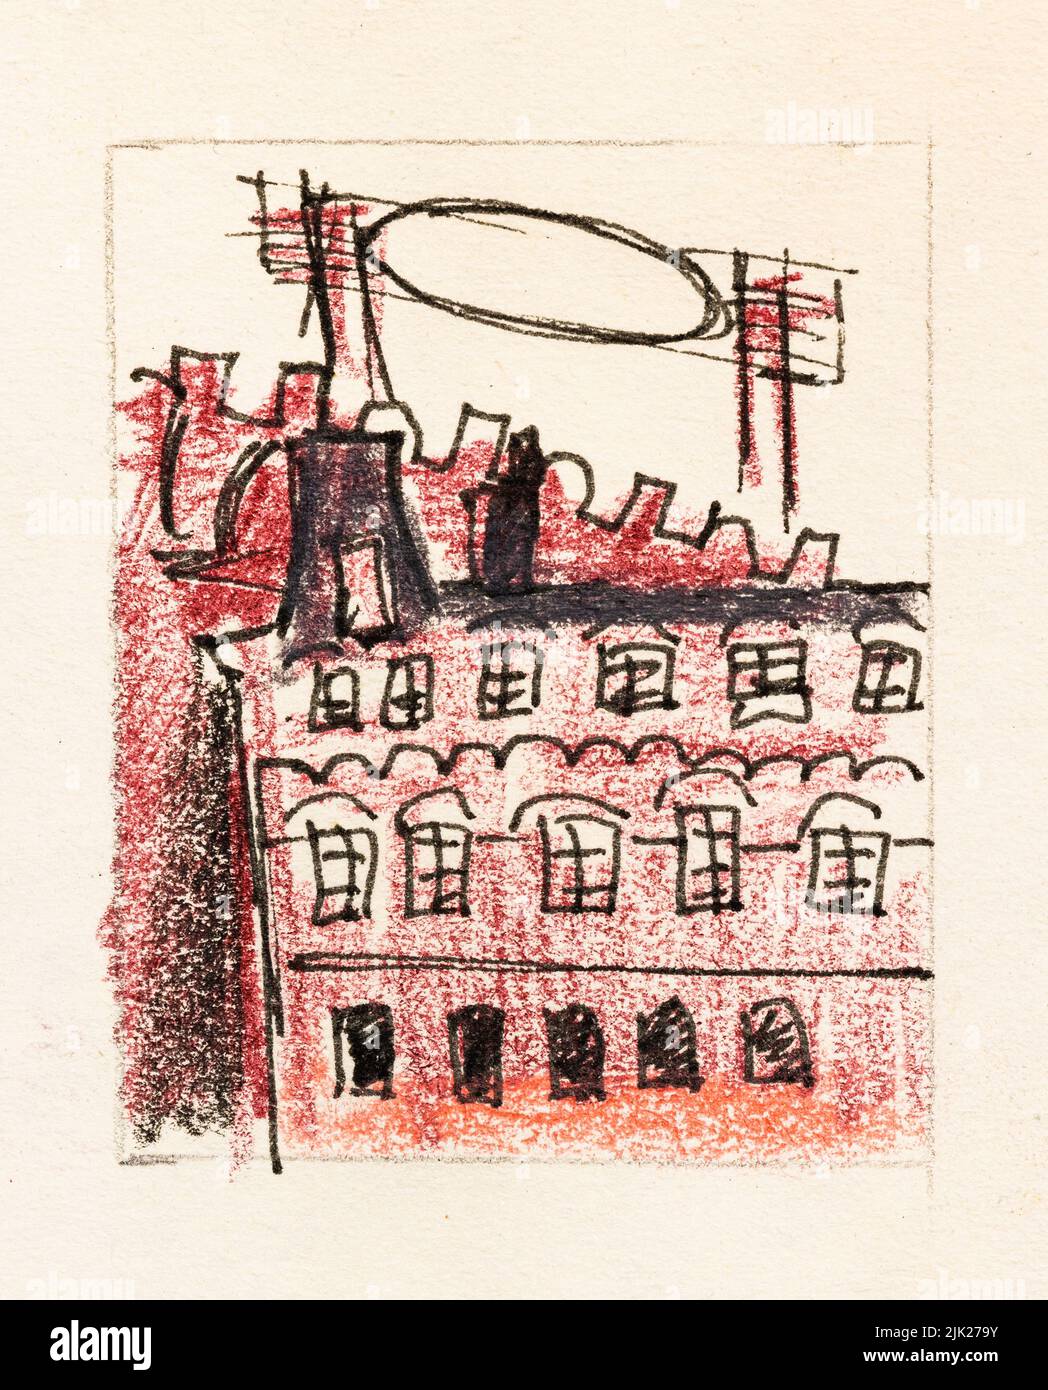 Boceto del edificio rojo de la ciudad de Moscú dibujado a mano con lápices de colores y pluma negra sobre papel texturizado amarillo viejo de primer plano Foto de stock